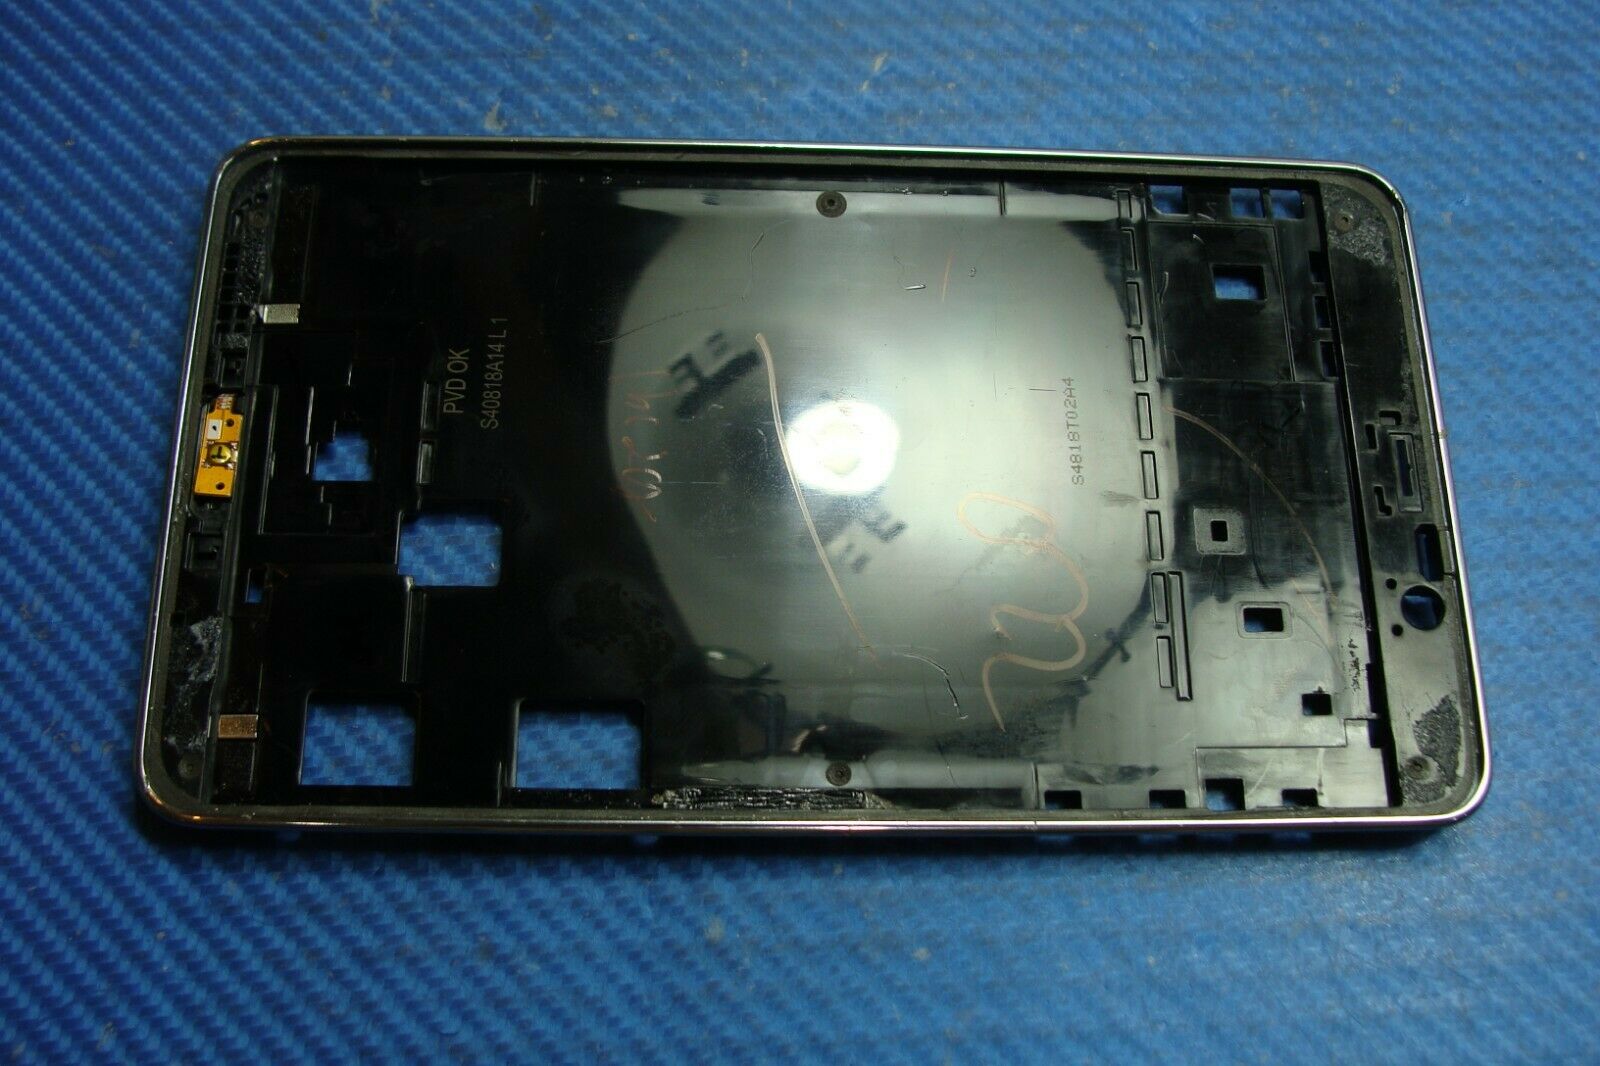 Samsung Galaxy Tab 4 7